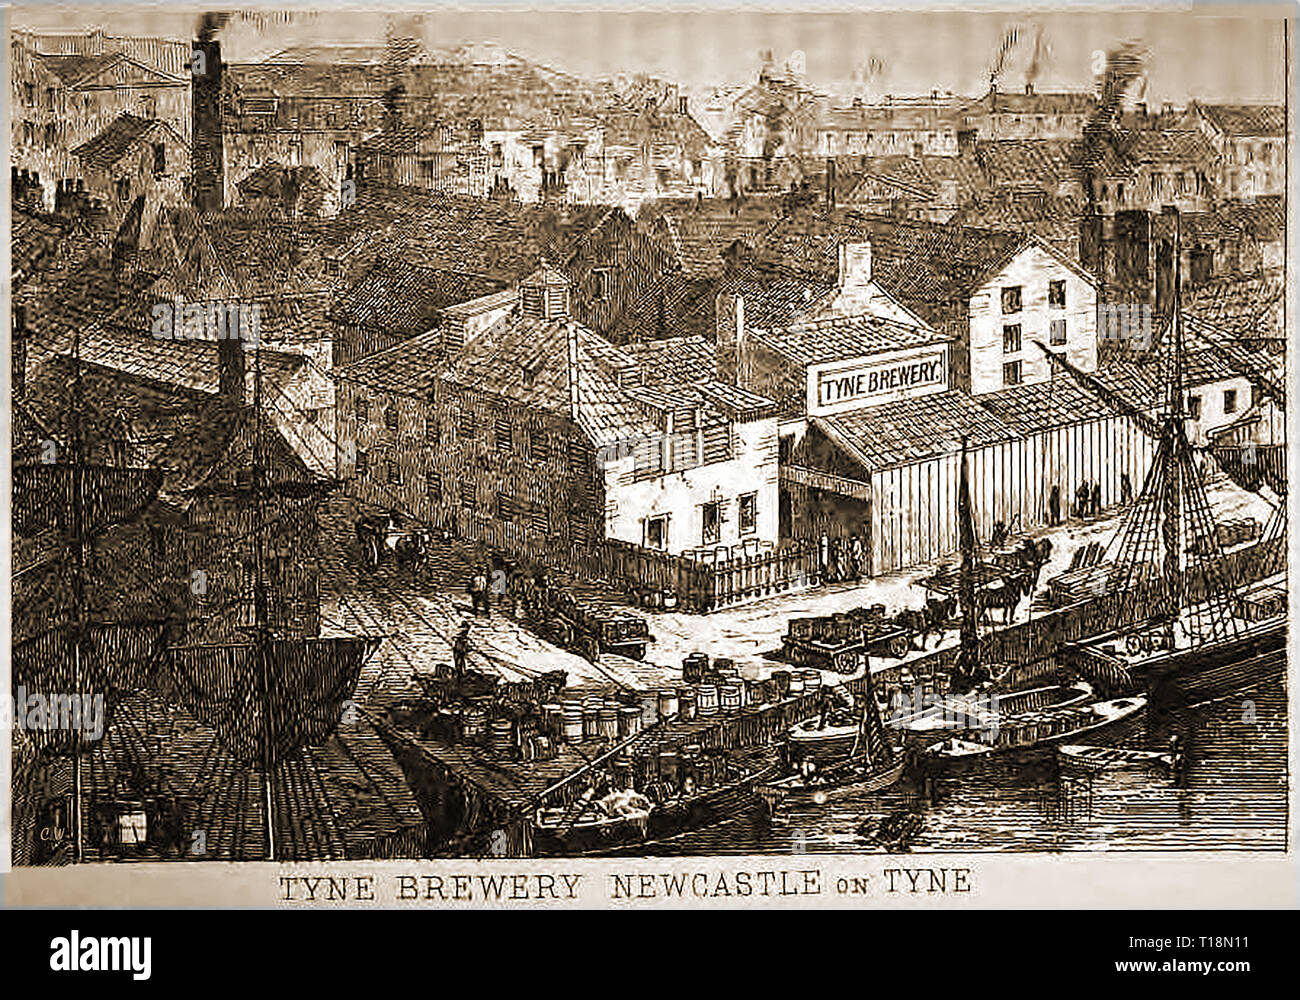 Un vieux imprimer montrant la Brasserie Tyne Newcastle on Tyne (Royaume-Uni) dans les années 1800 Banque D'Images